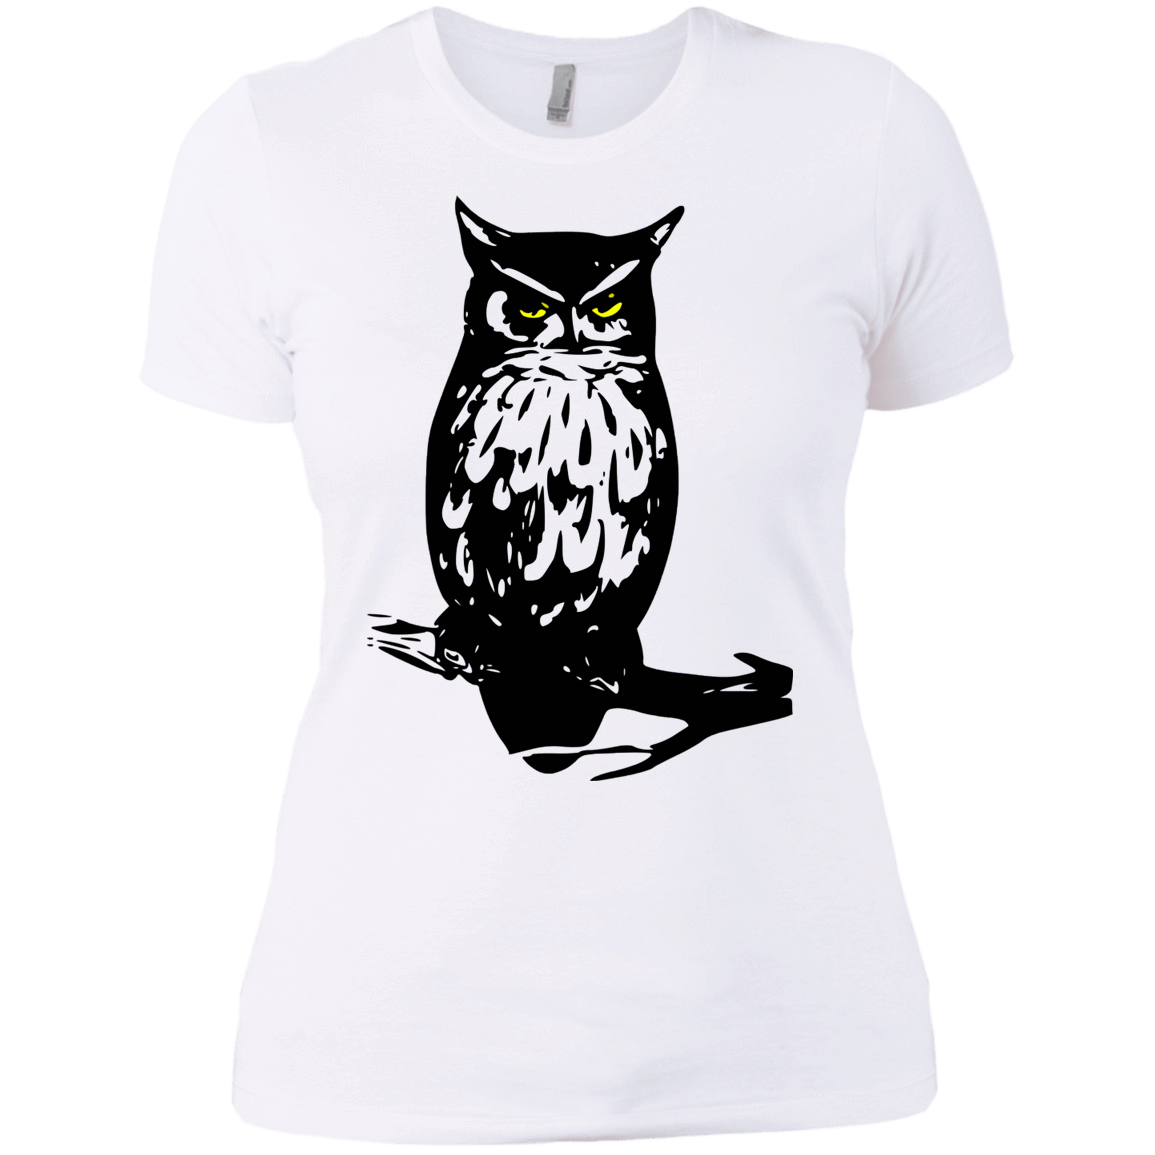 T-Shirts White / X-Small Owl Portrait Women's Premium T-Shirt